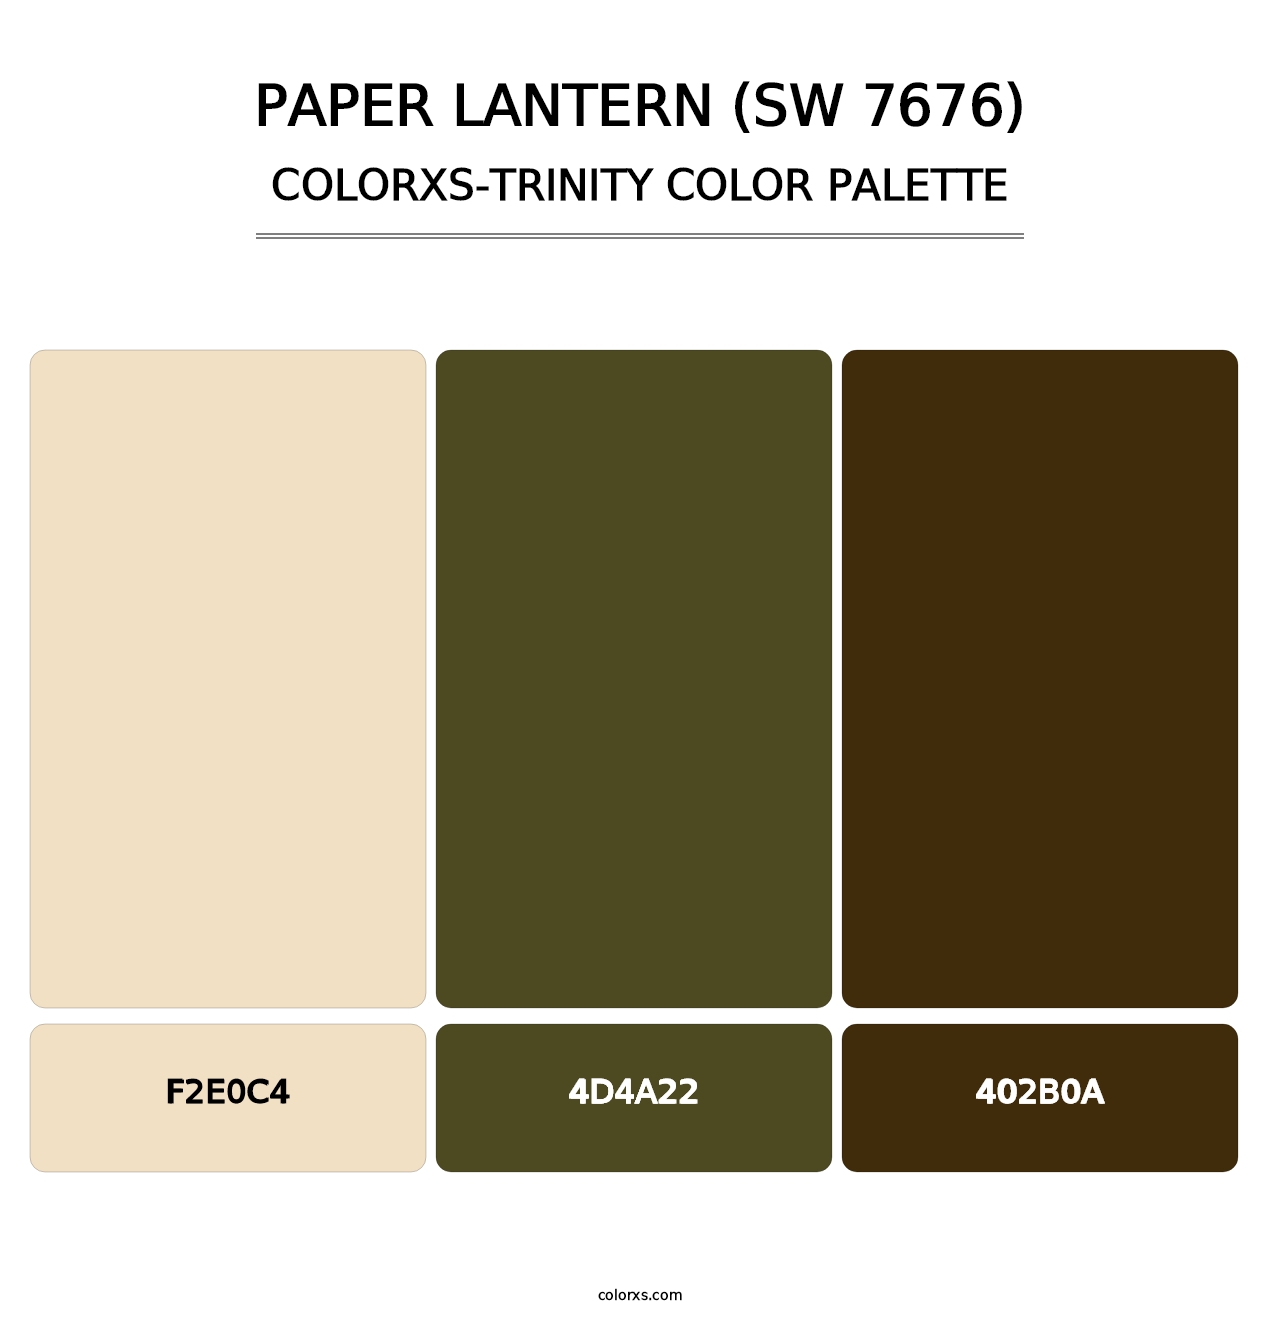 Paper Lantern (SW 7676) - Colorxs Trinity Palette